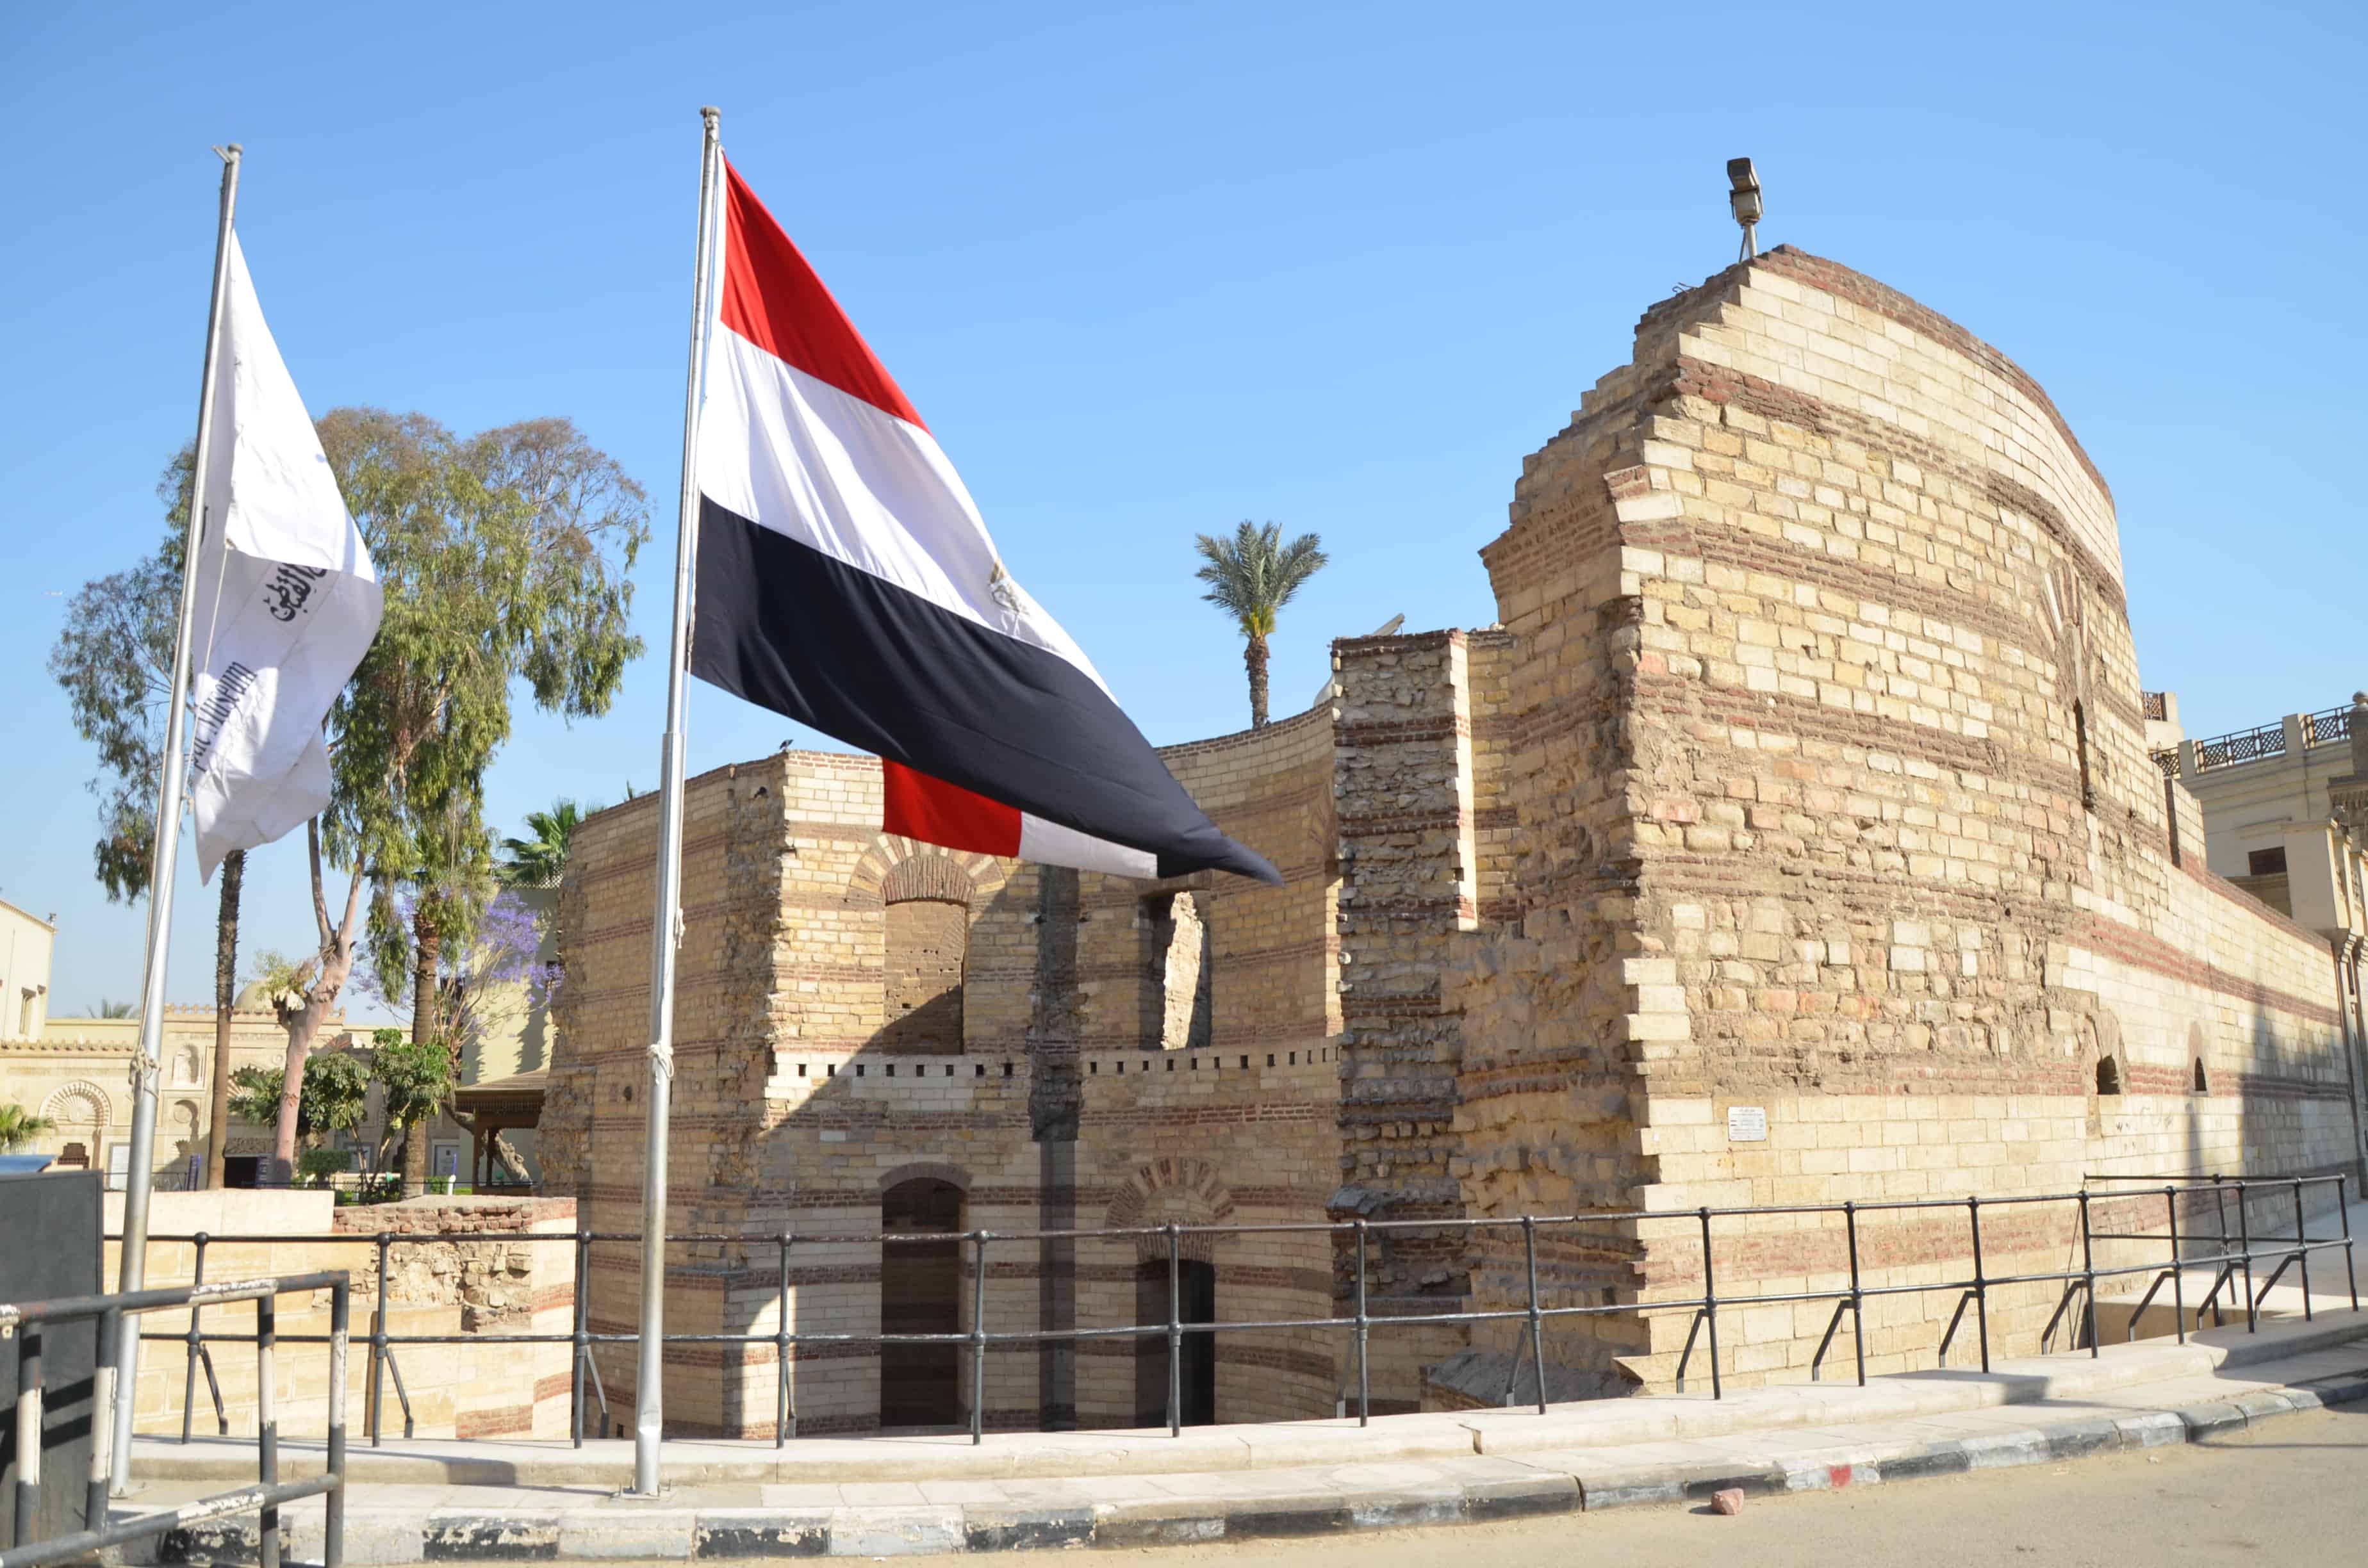 Babylon Fortress in Cairo, Egypt